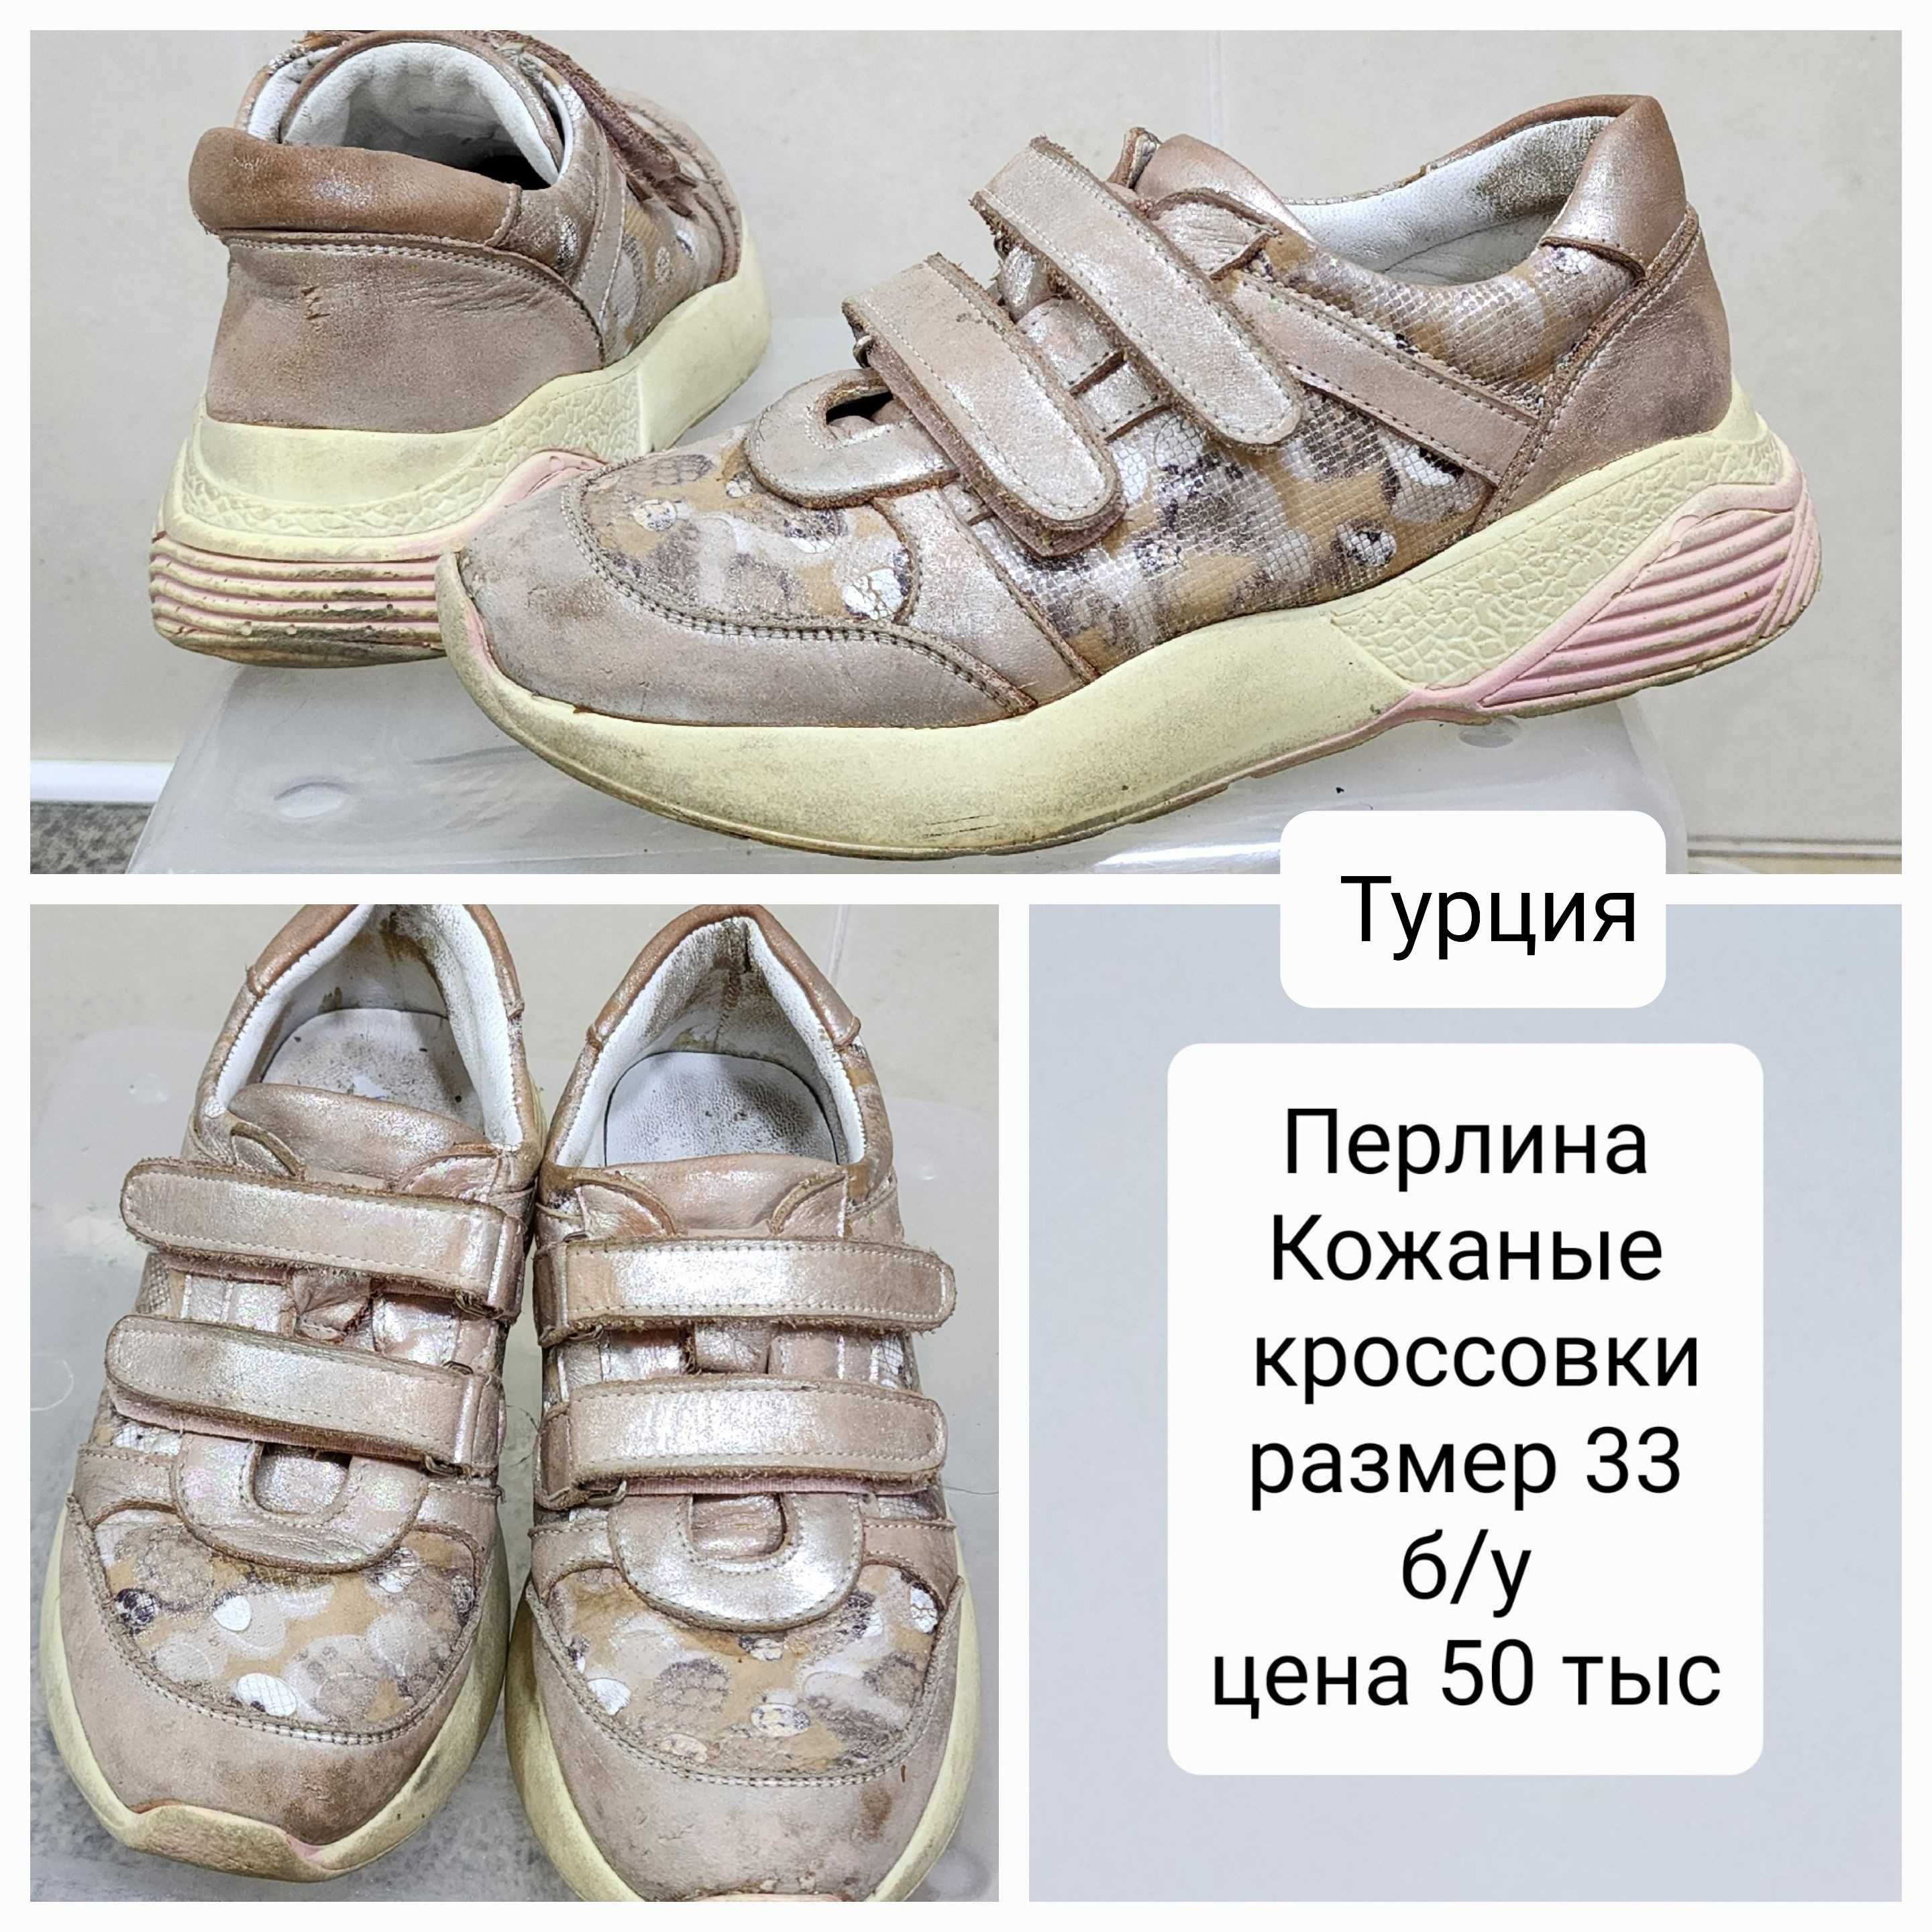 Обувь кожаная (Турция, фирмы Перлина) для девочек, б/у